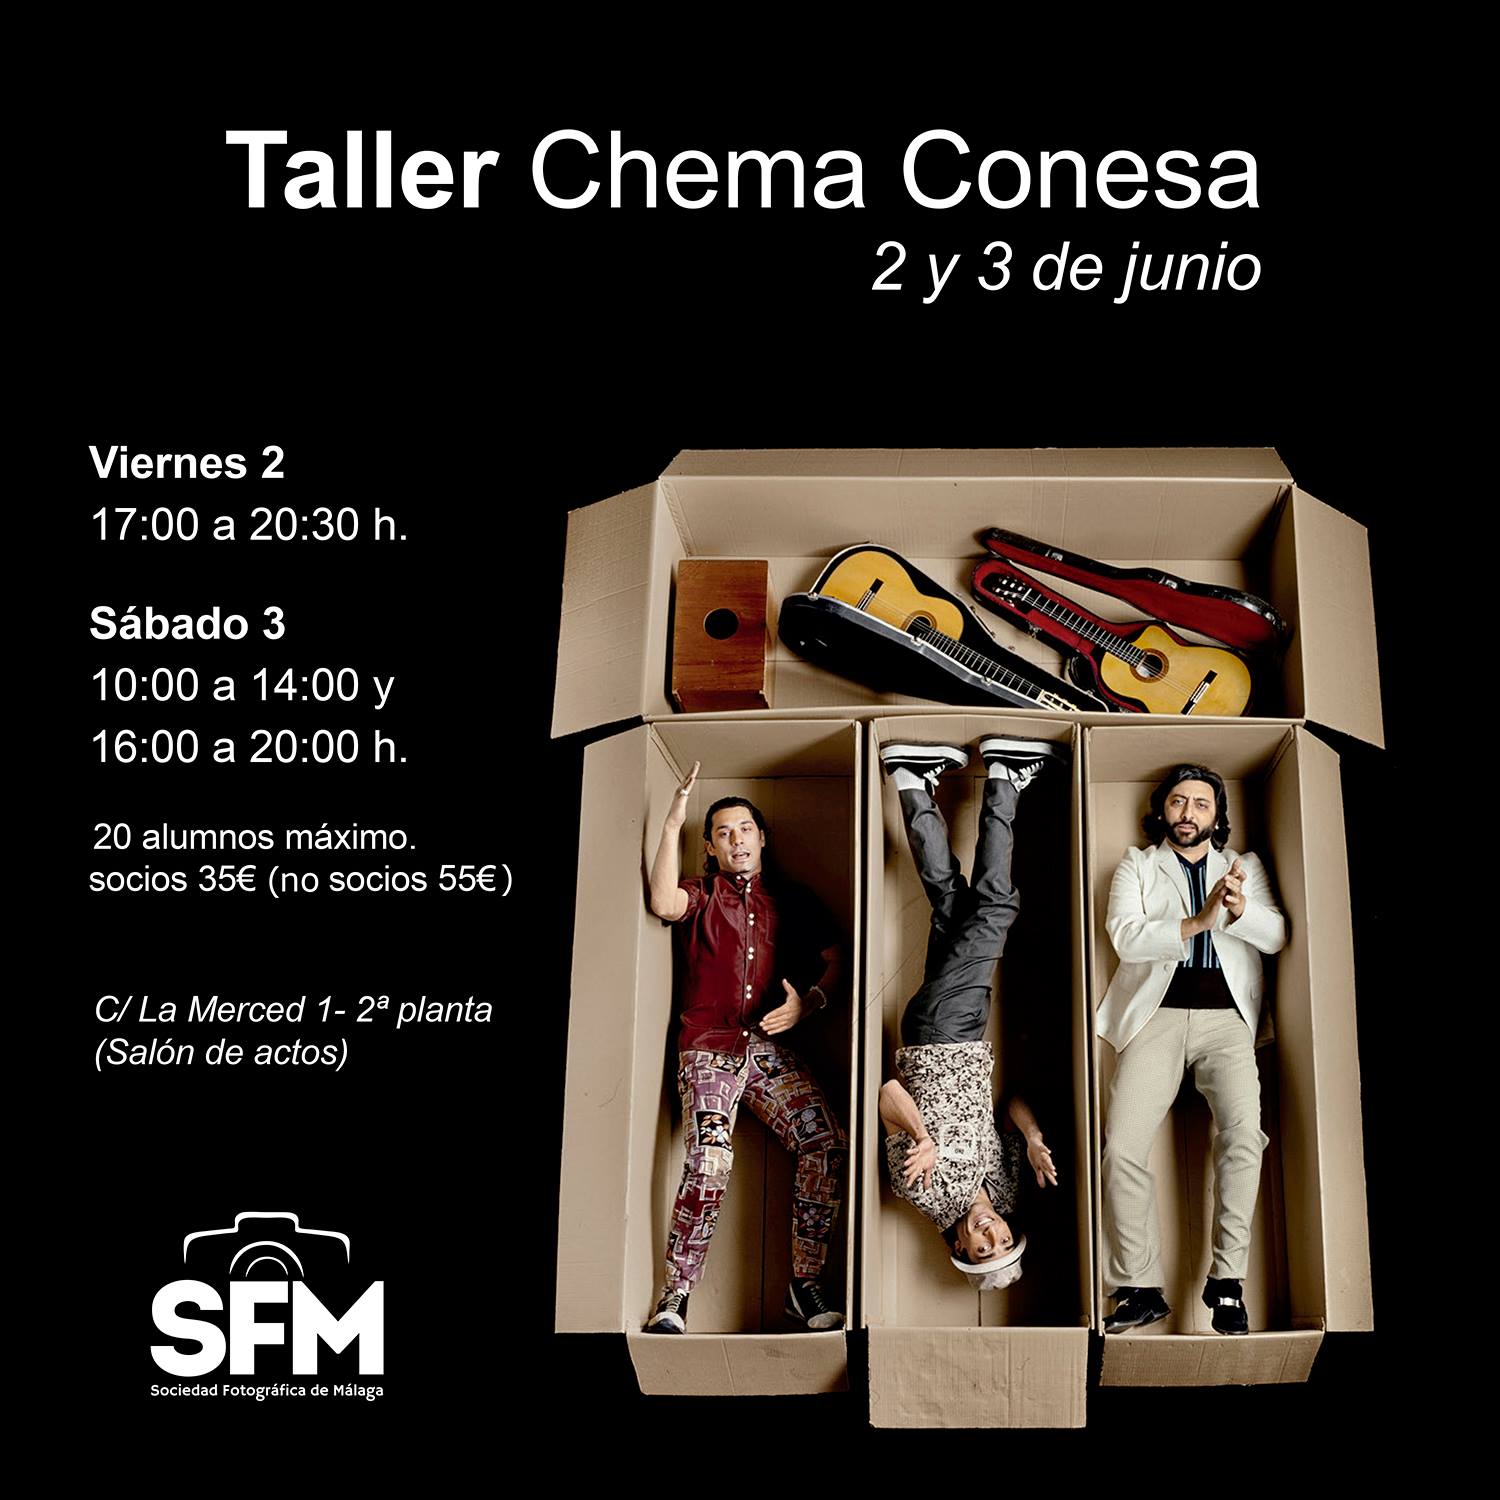 Sociedad Fotográfica de Málaga (SFM) - Taller%20de%20Chema%20Conesa.jpg